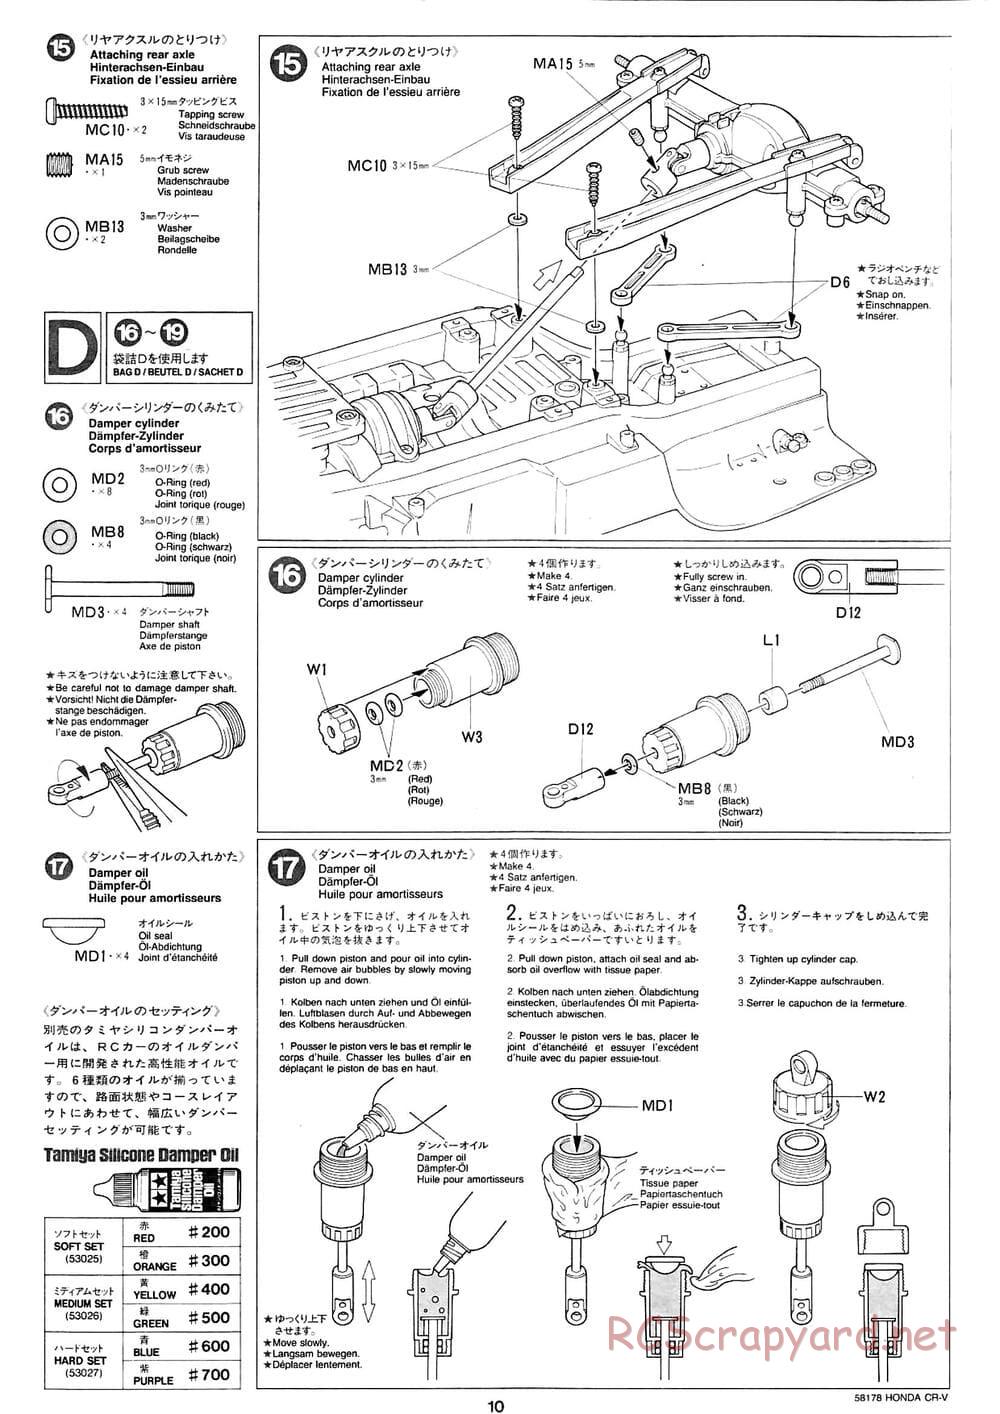 Tamiya - Honda CR-V - CC-01 Chassis - Manual - Page 10